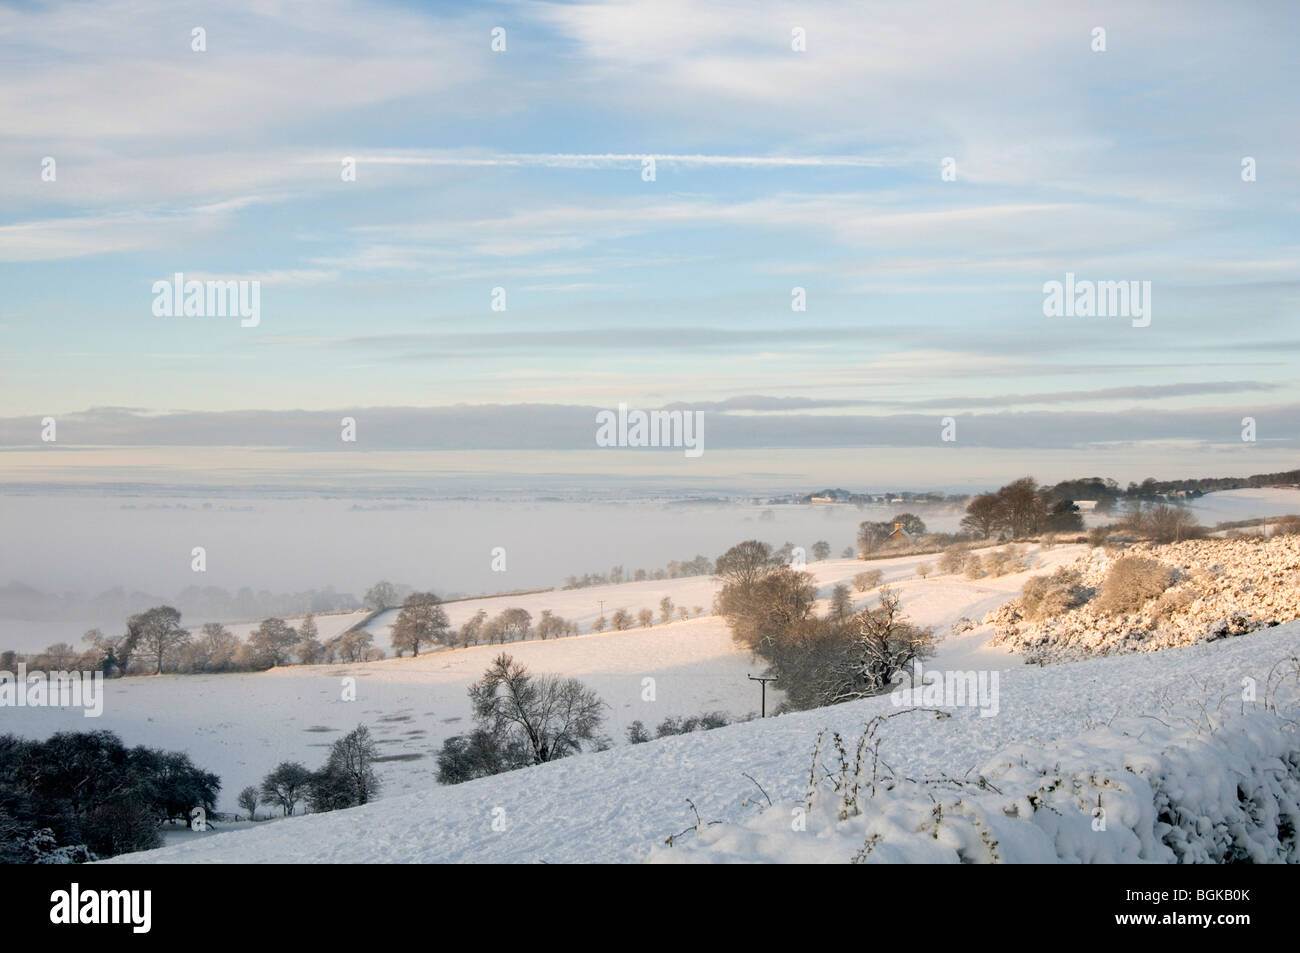 North Yorkshire dans beaucoup de neige hiver 09/10 grand gel glace scène hivernale paysage carte de Noël cartes de paysages enneigés snowi Banque D'Images